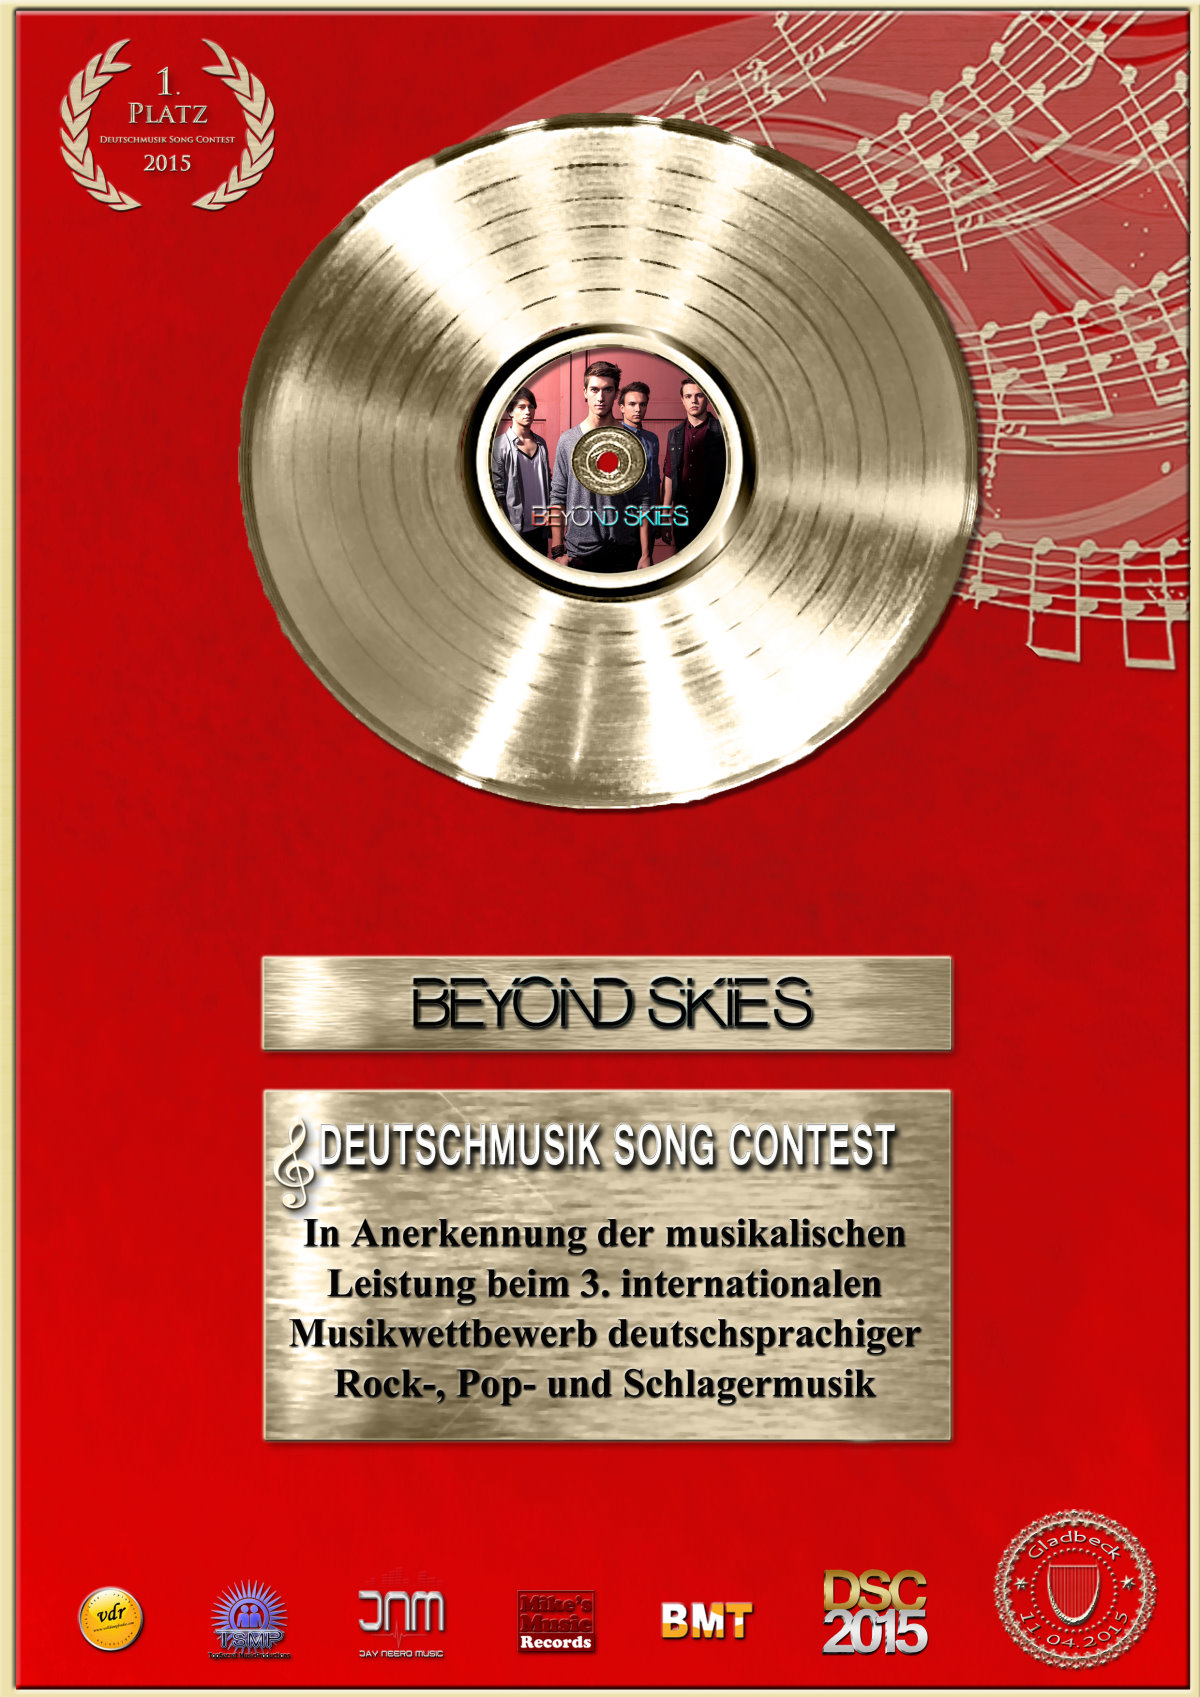 News - Central: Deutschmusik-Song-Contest-Award 